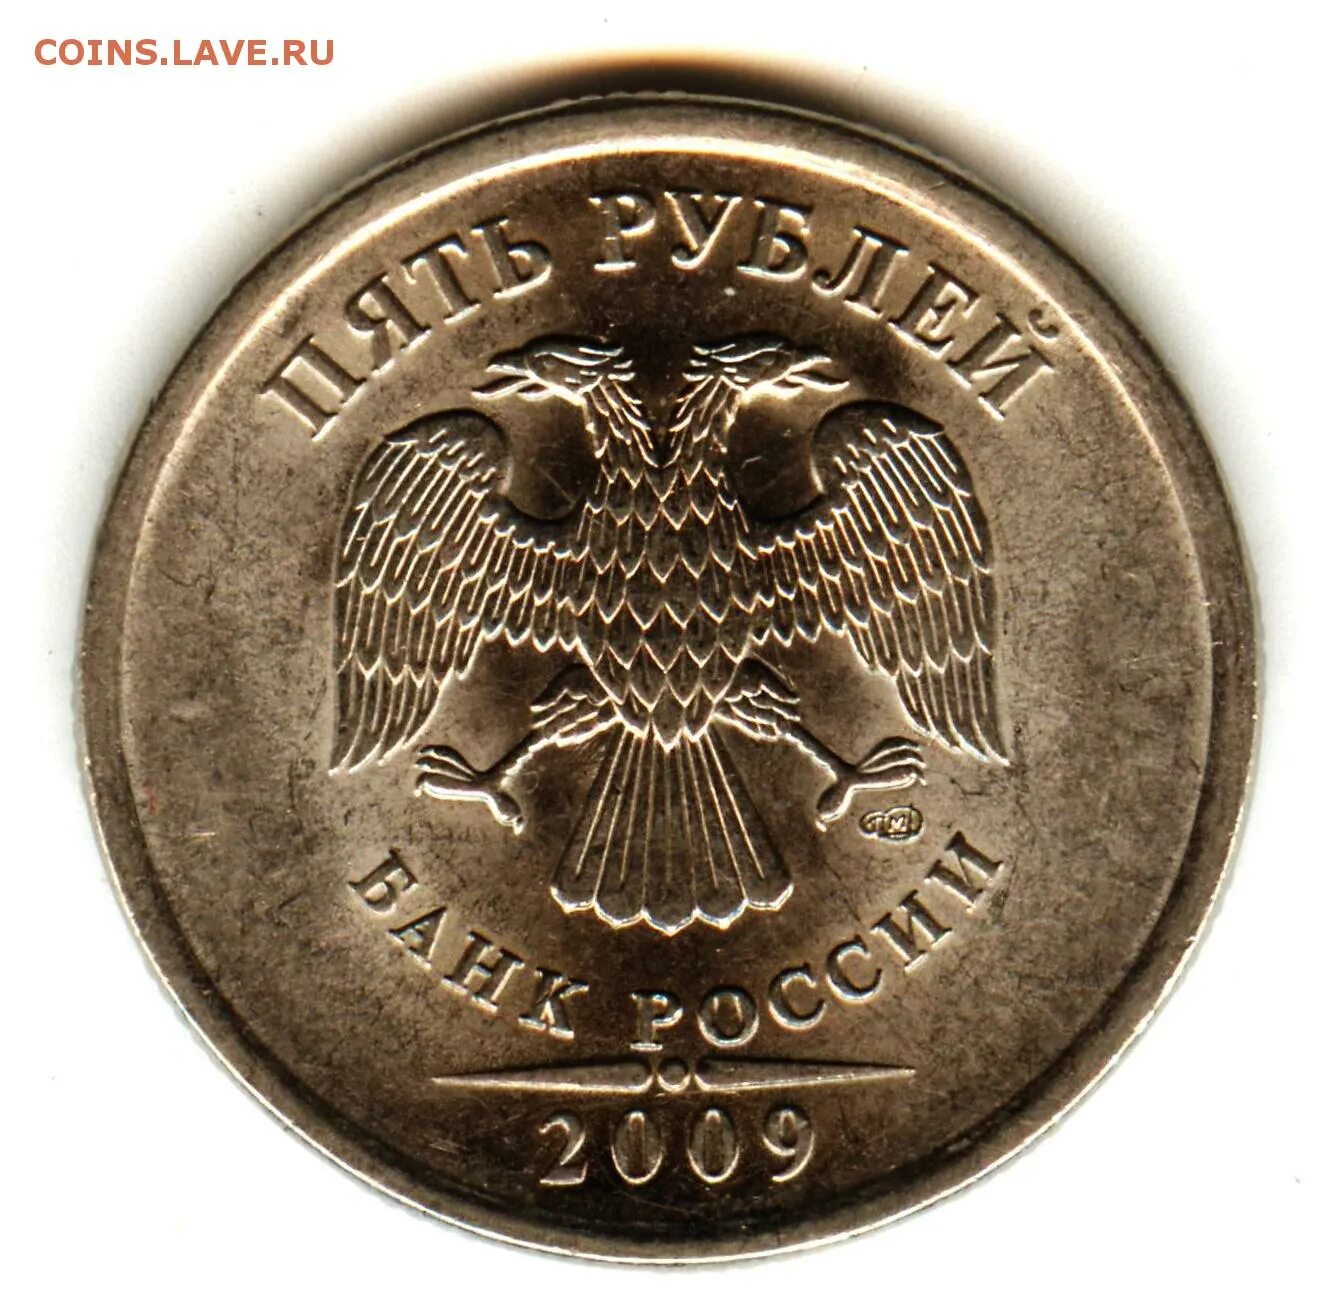 5 рублей 2009 спмд. Штемпеля для монет Российской империи.